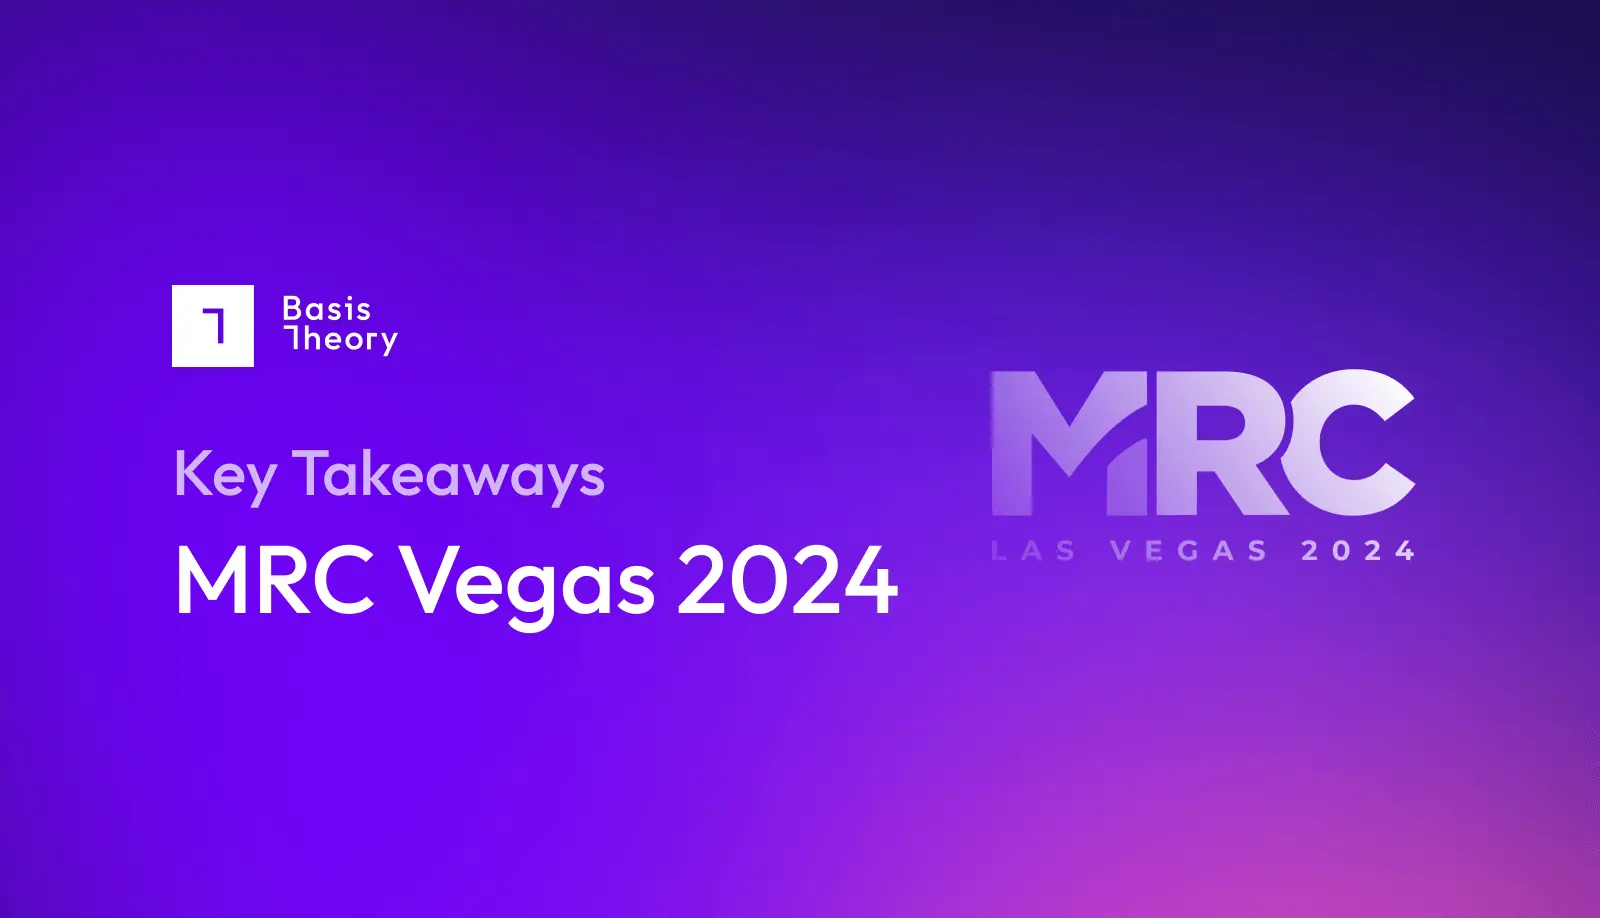 Key takeaways from MRC Vegas 2024